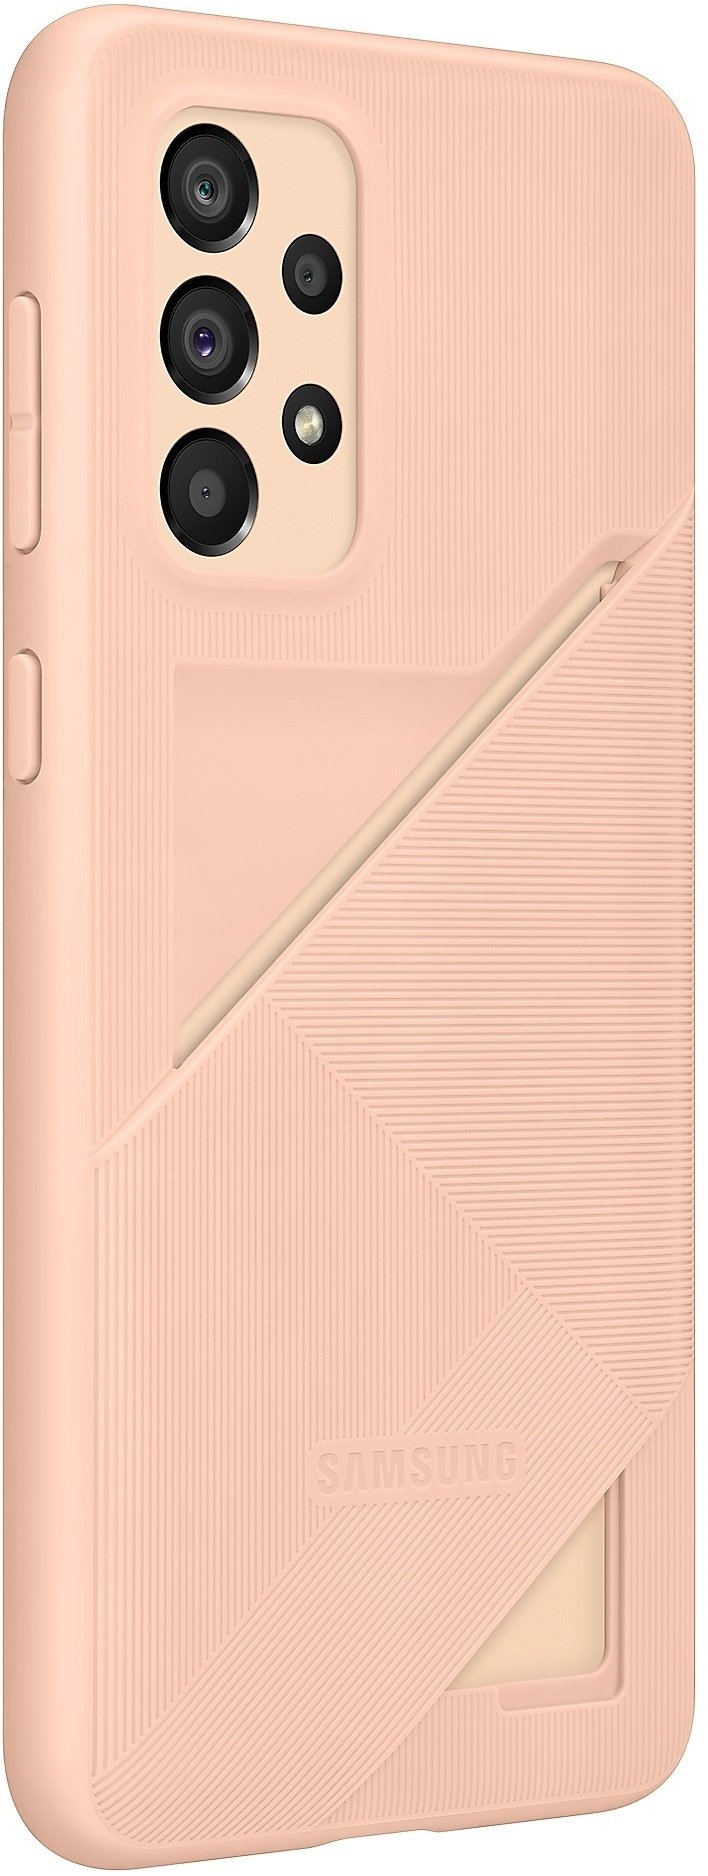 Чехол Samsung для Galaxy A33 5G Card Slot Cover Peach (EF-OA336TPEGRU) фото 3